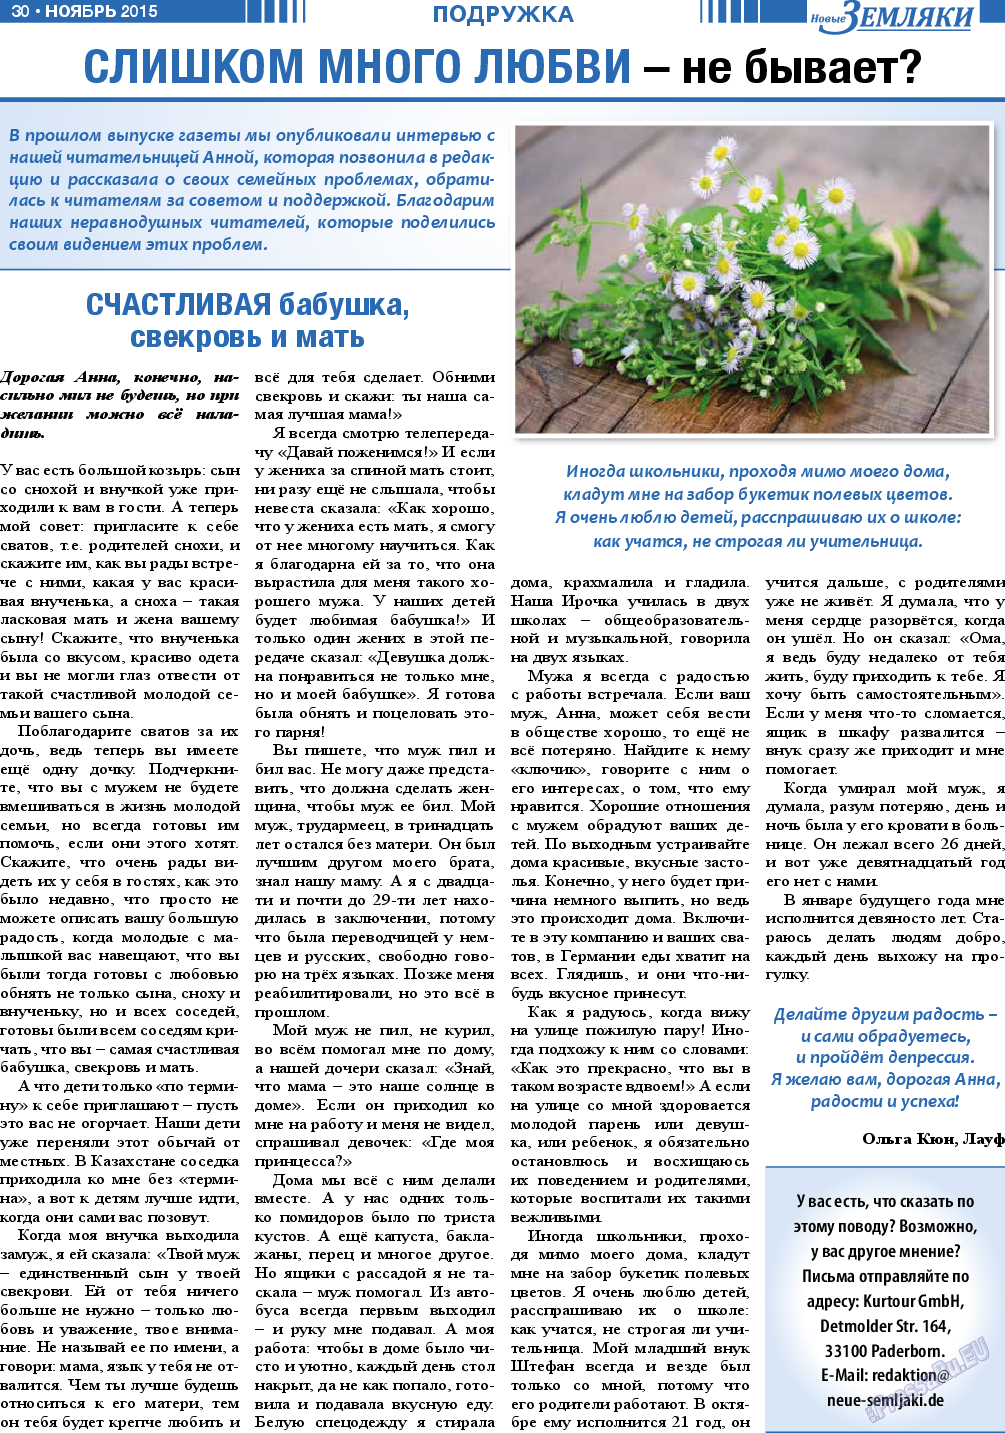 Новые Земляки, газета. 2015 №11 стр.30